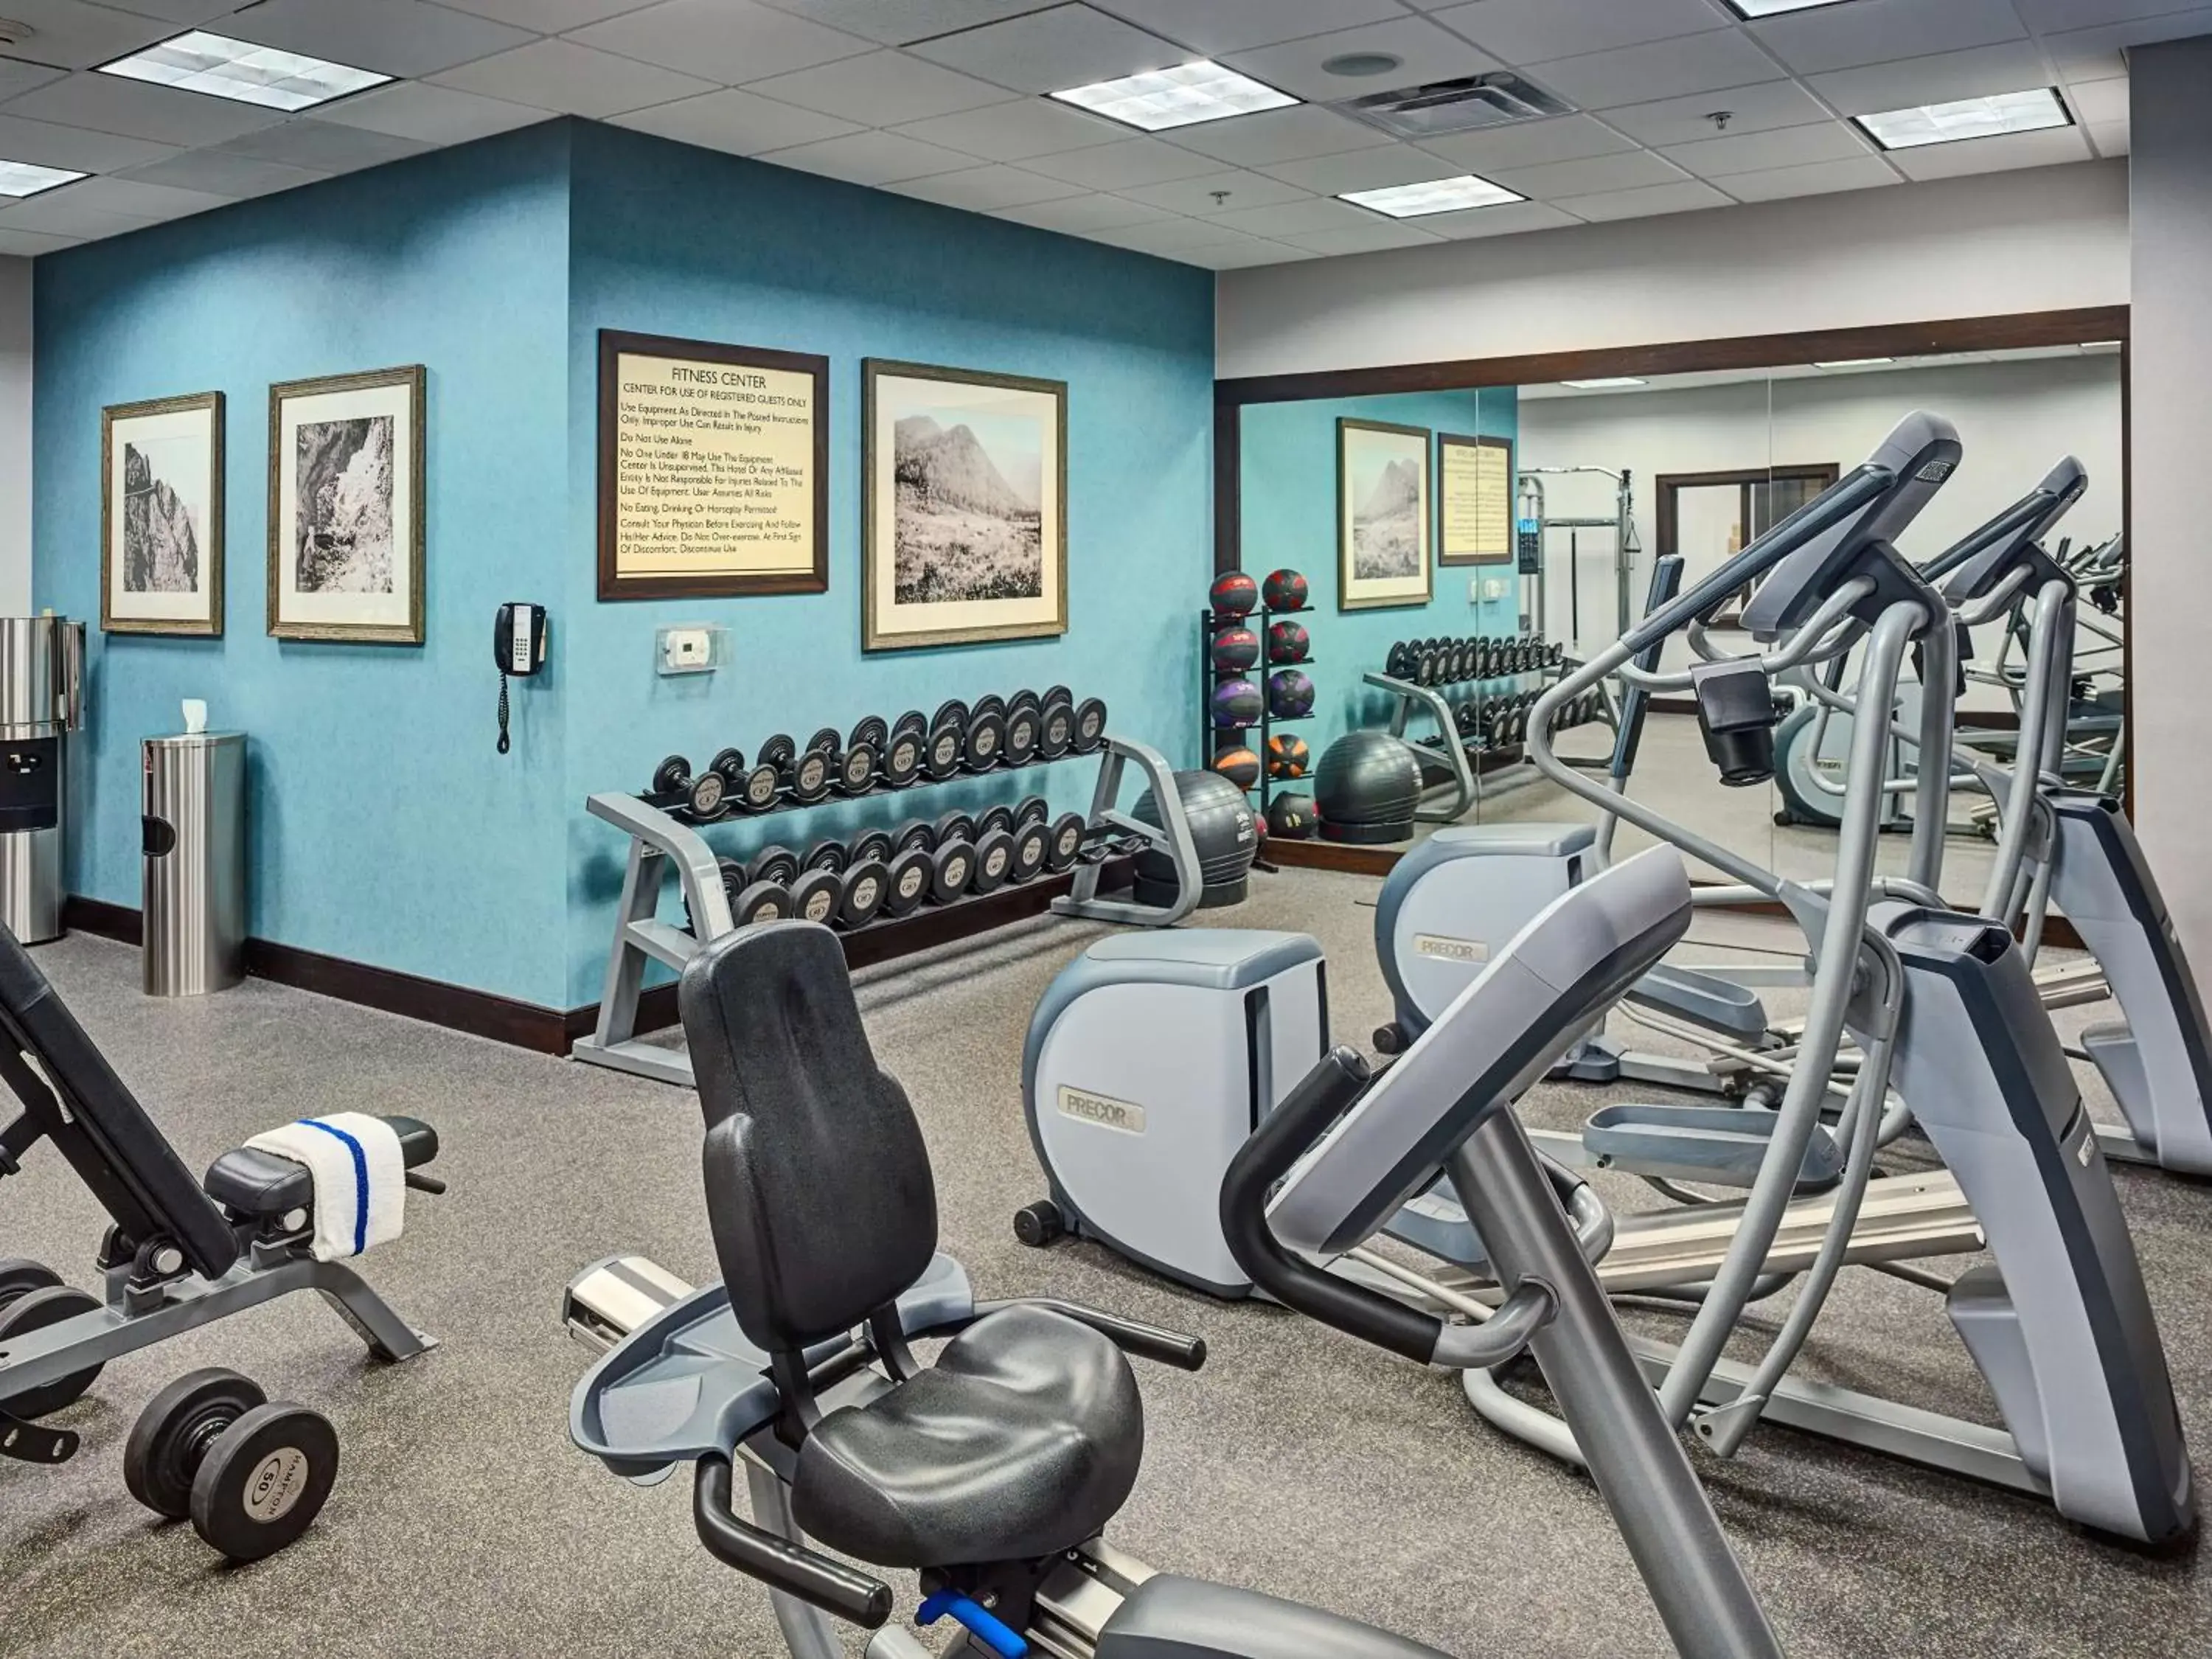 Fitness centre/facilities, Fitness Center/Facilities in Hilton Garden Inn Gatlinburg